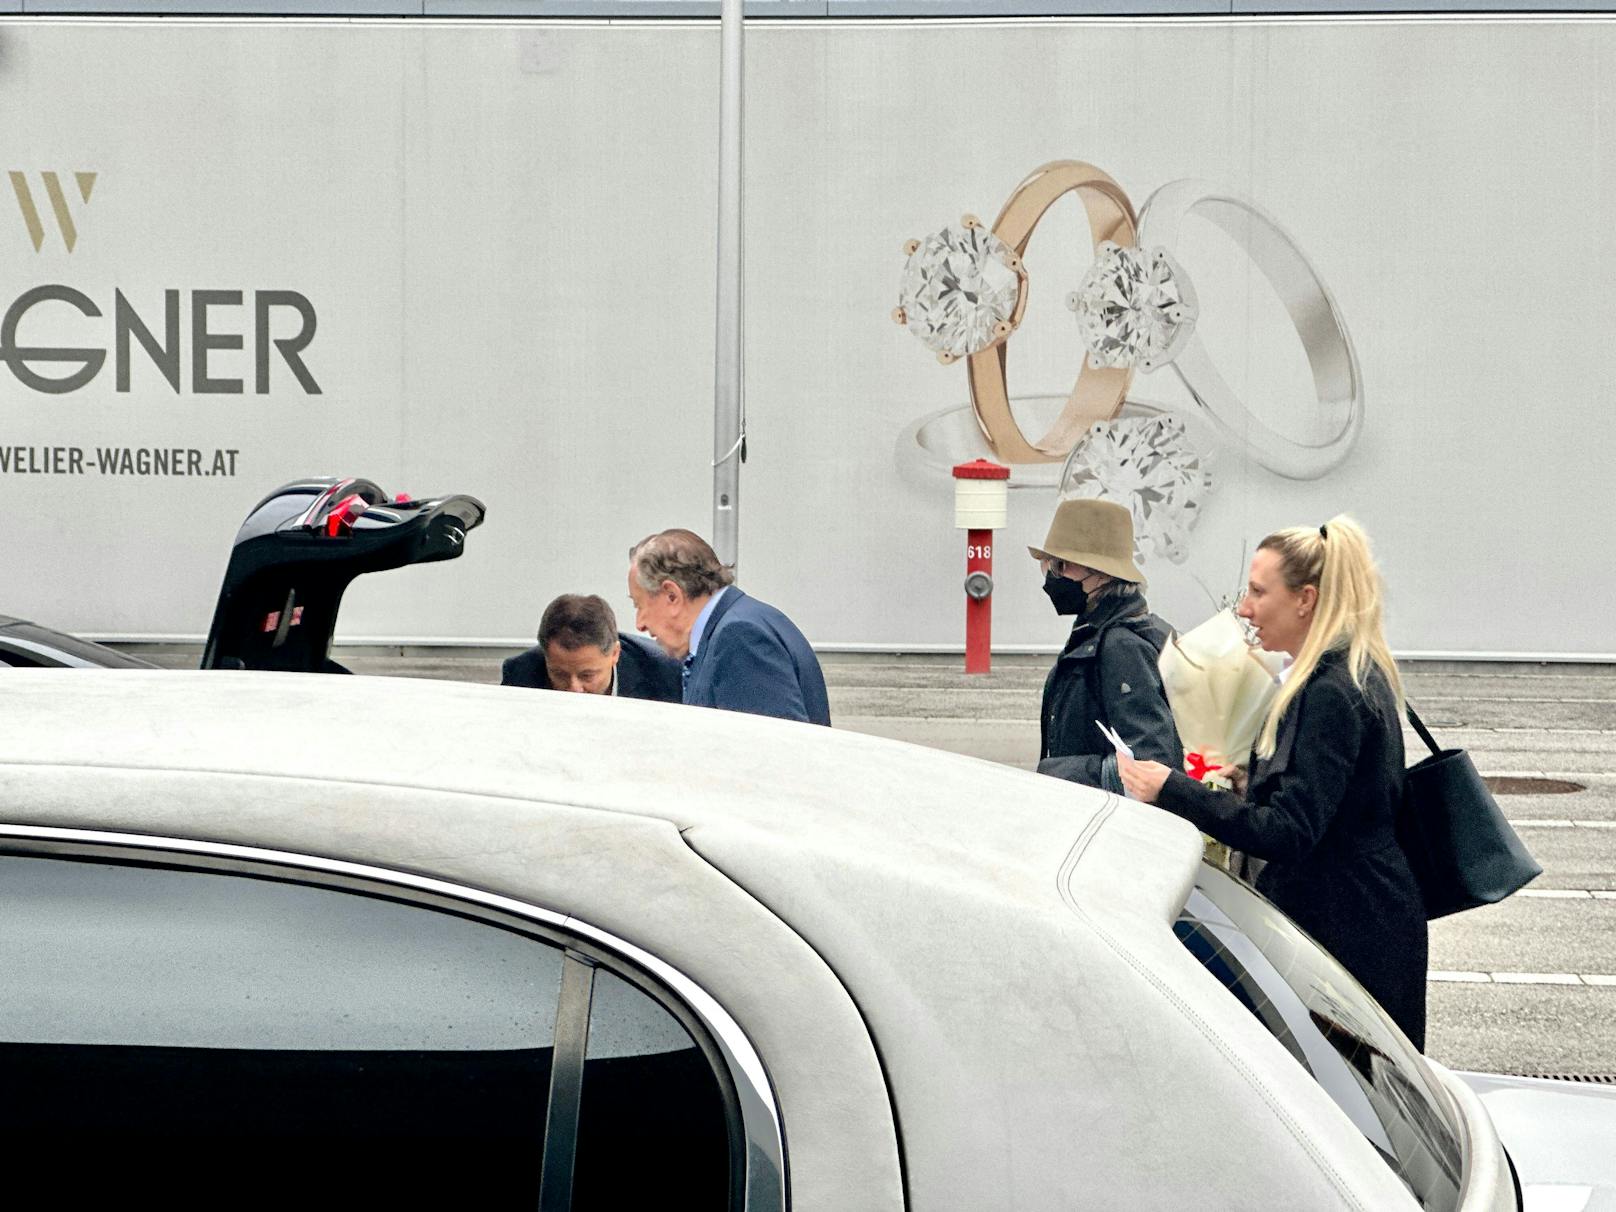 Ankunft Opernballgast Jane Fonda am VIP Terminal (general aviation) des Flughafen Wien-Schwechat, 13.2.2023.
